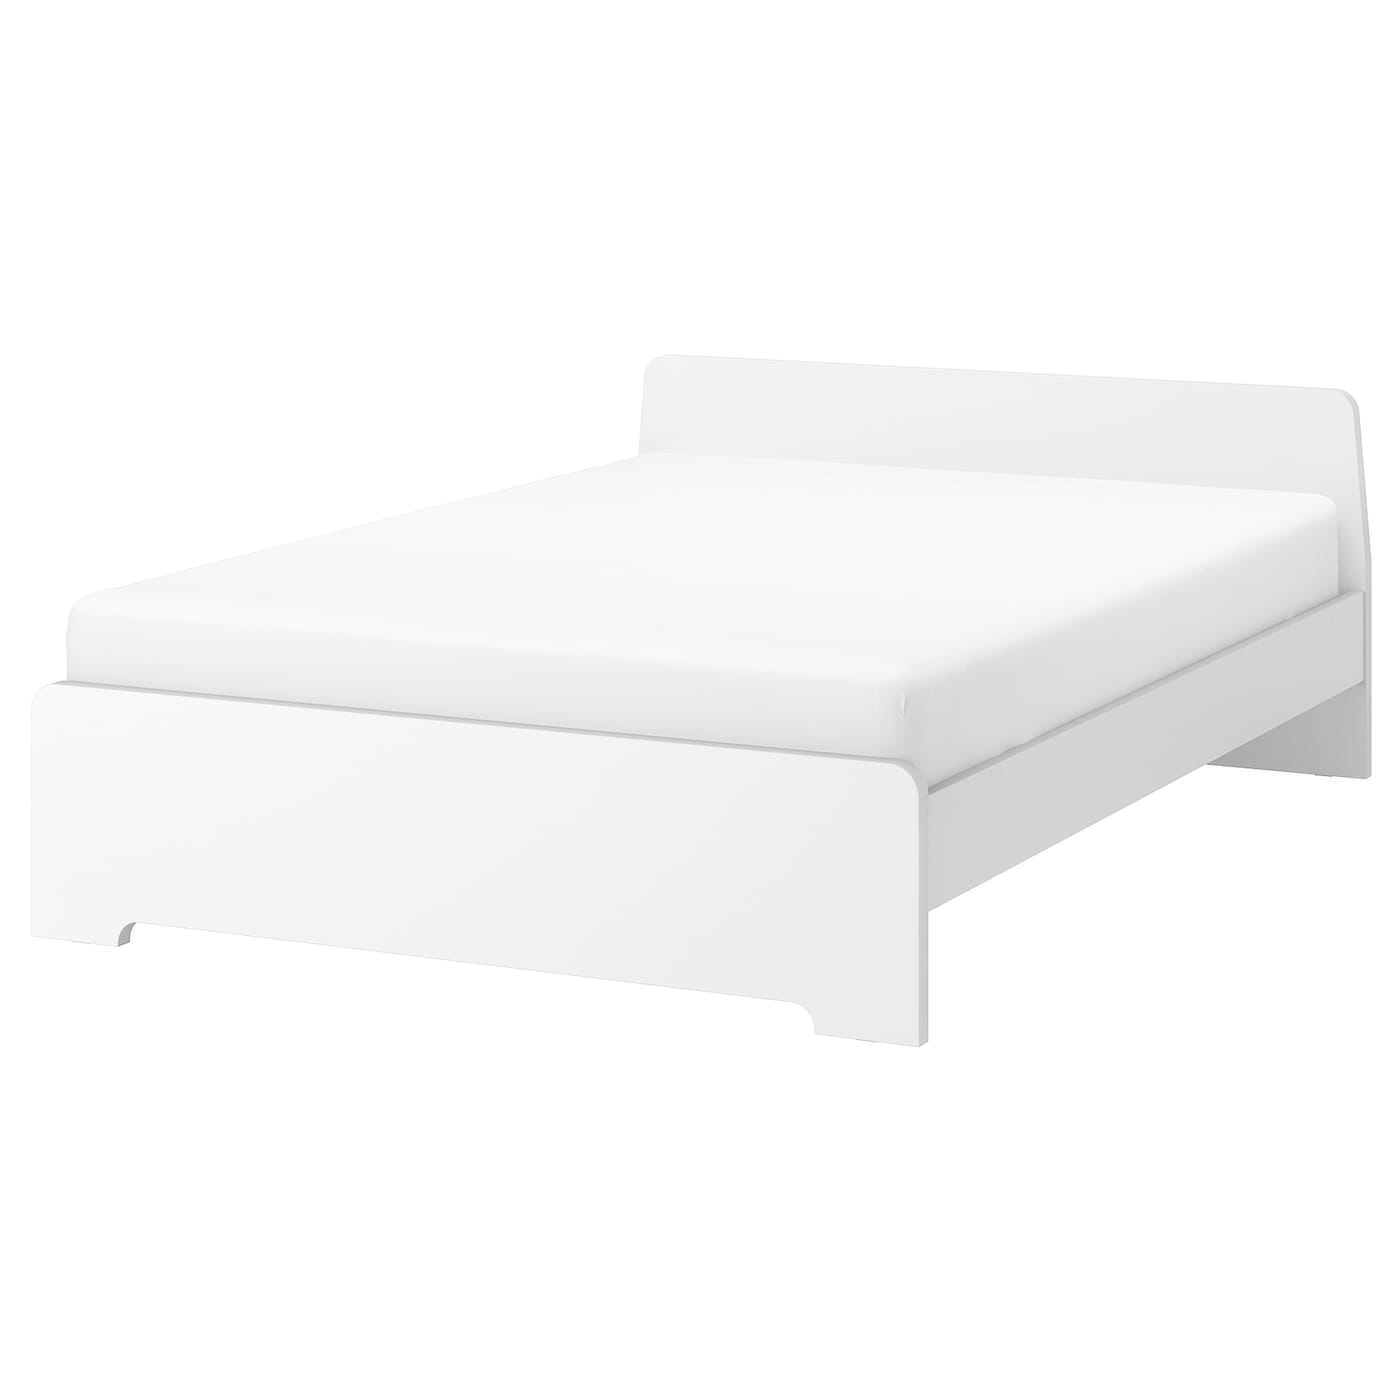 Каркас кровати - IKEA ASKVOLL, 200х160 см, белый, АСКВОЛЬ ИКЕА